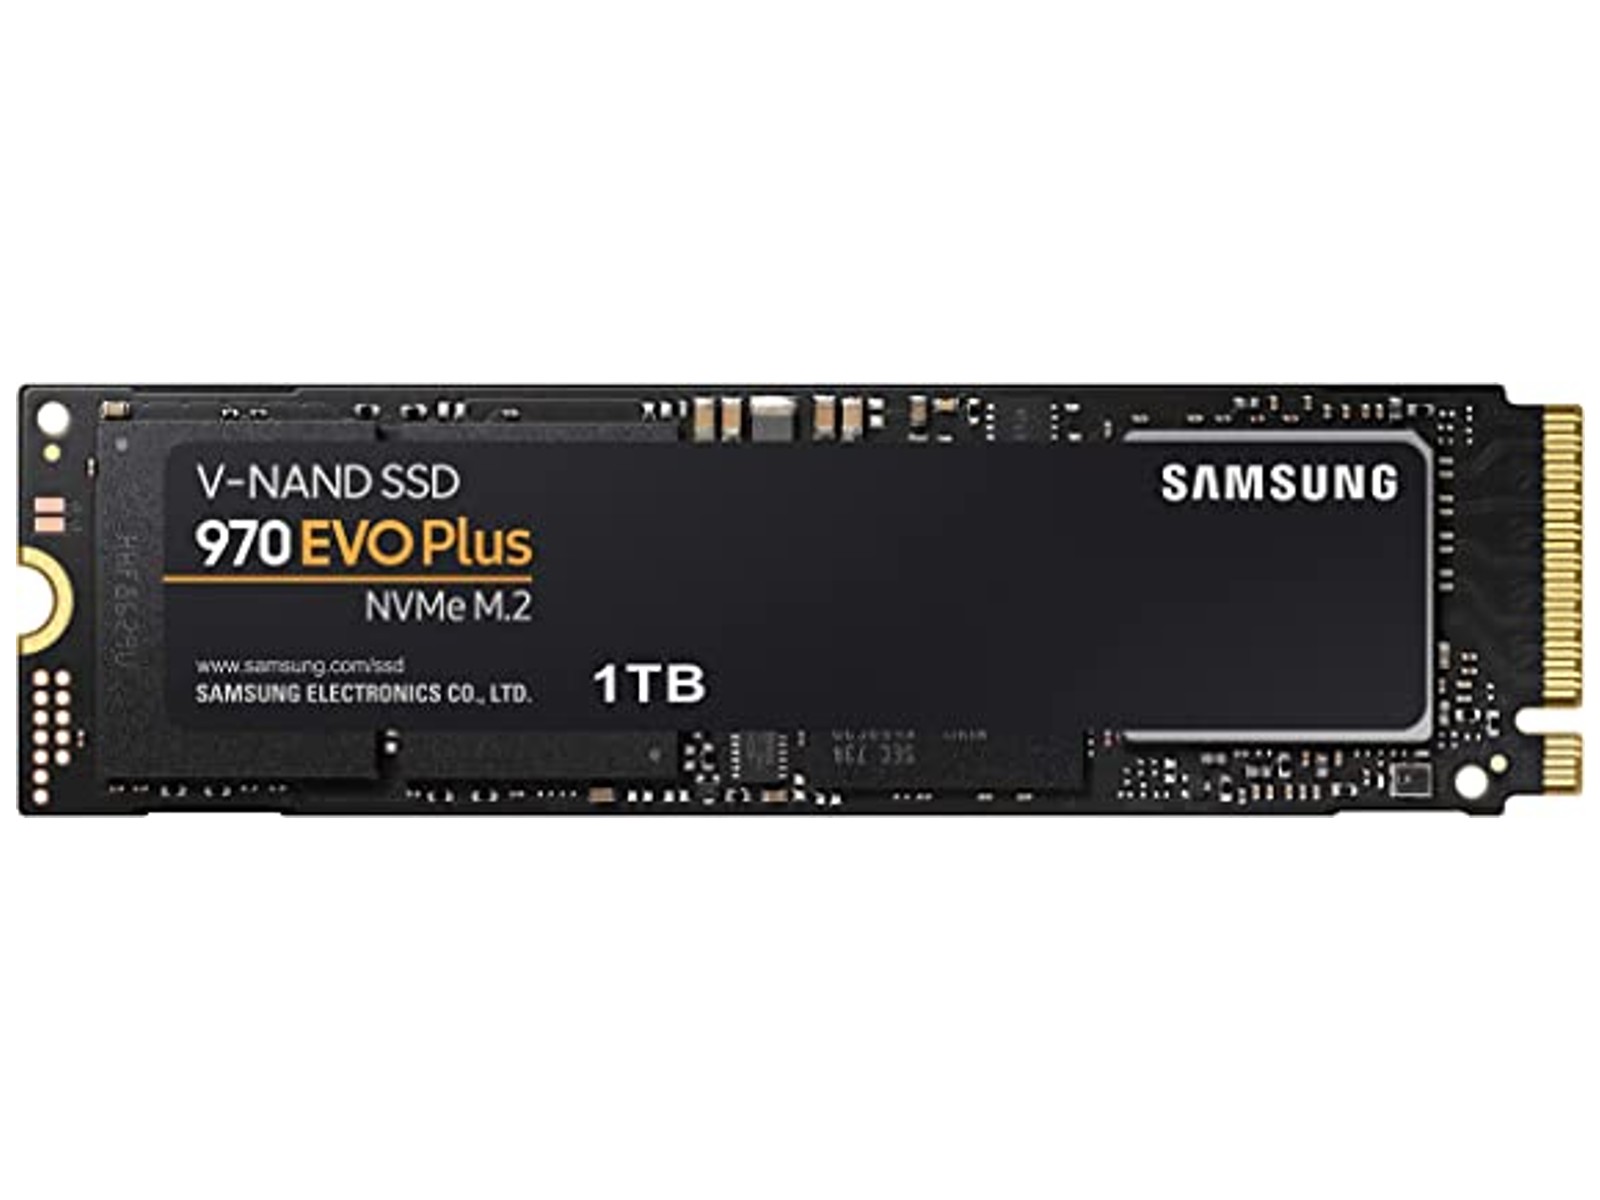 Samsung 970 Evo Plus" data-uuid="ab137a34-f64d-3a44-9254-99fca625eaf0